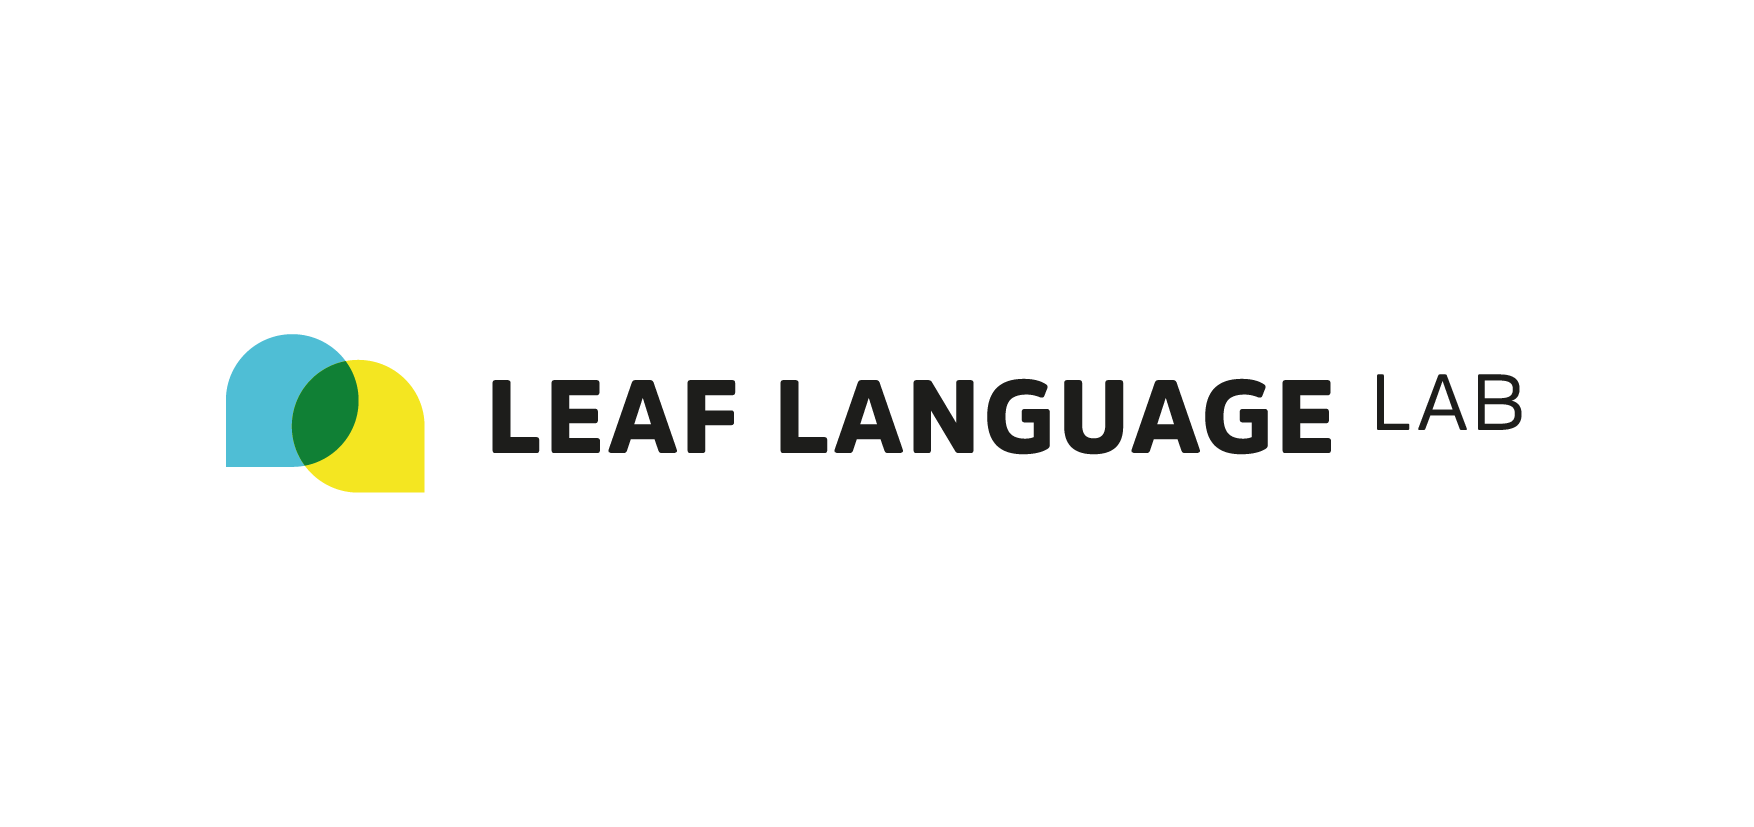 LLL per sitoPB-logo extend